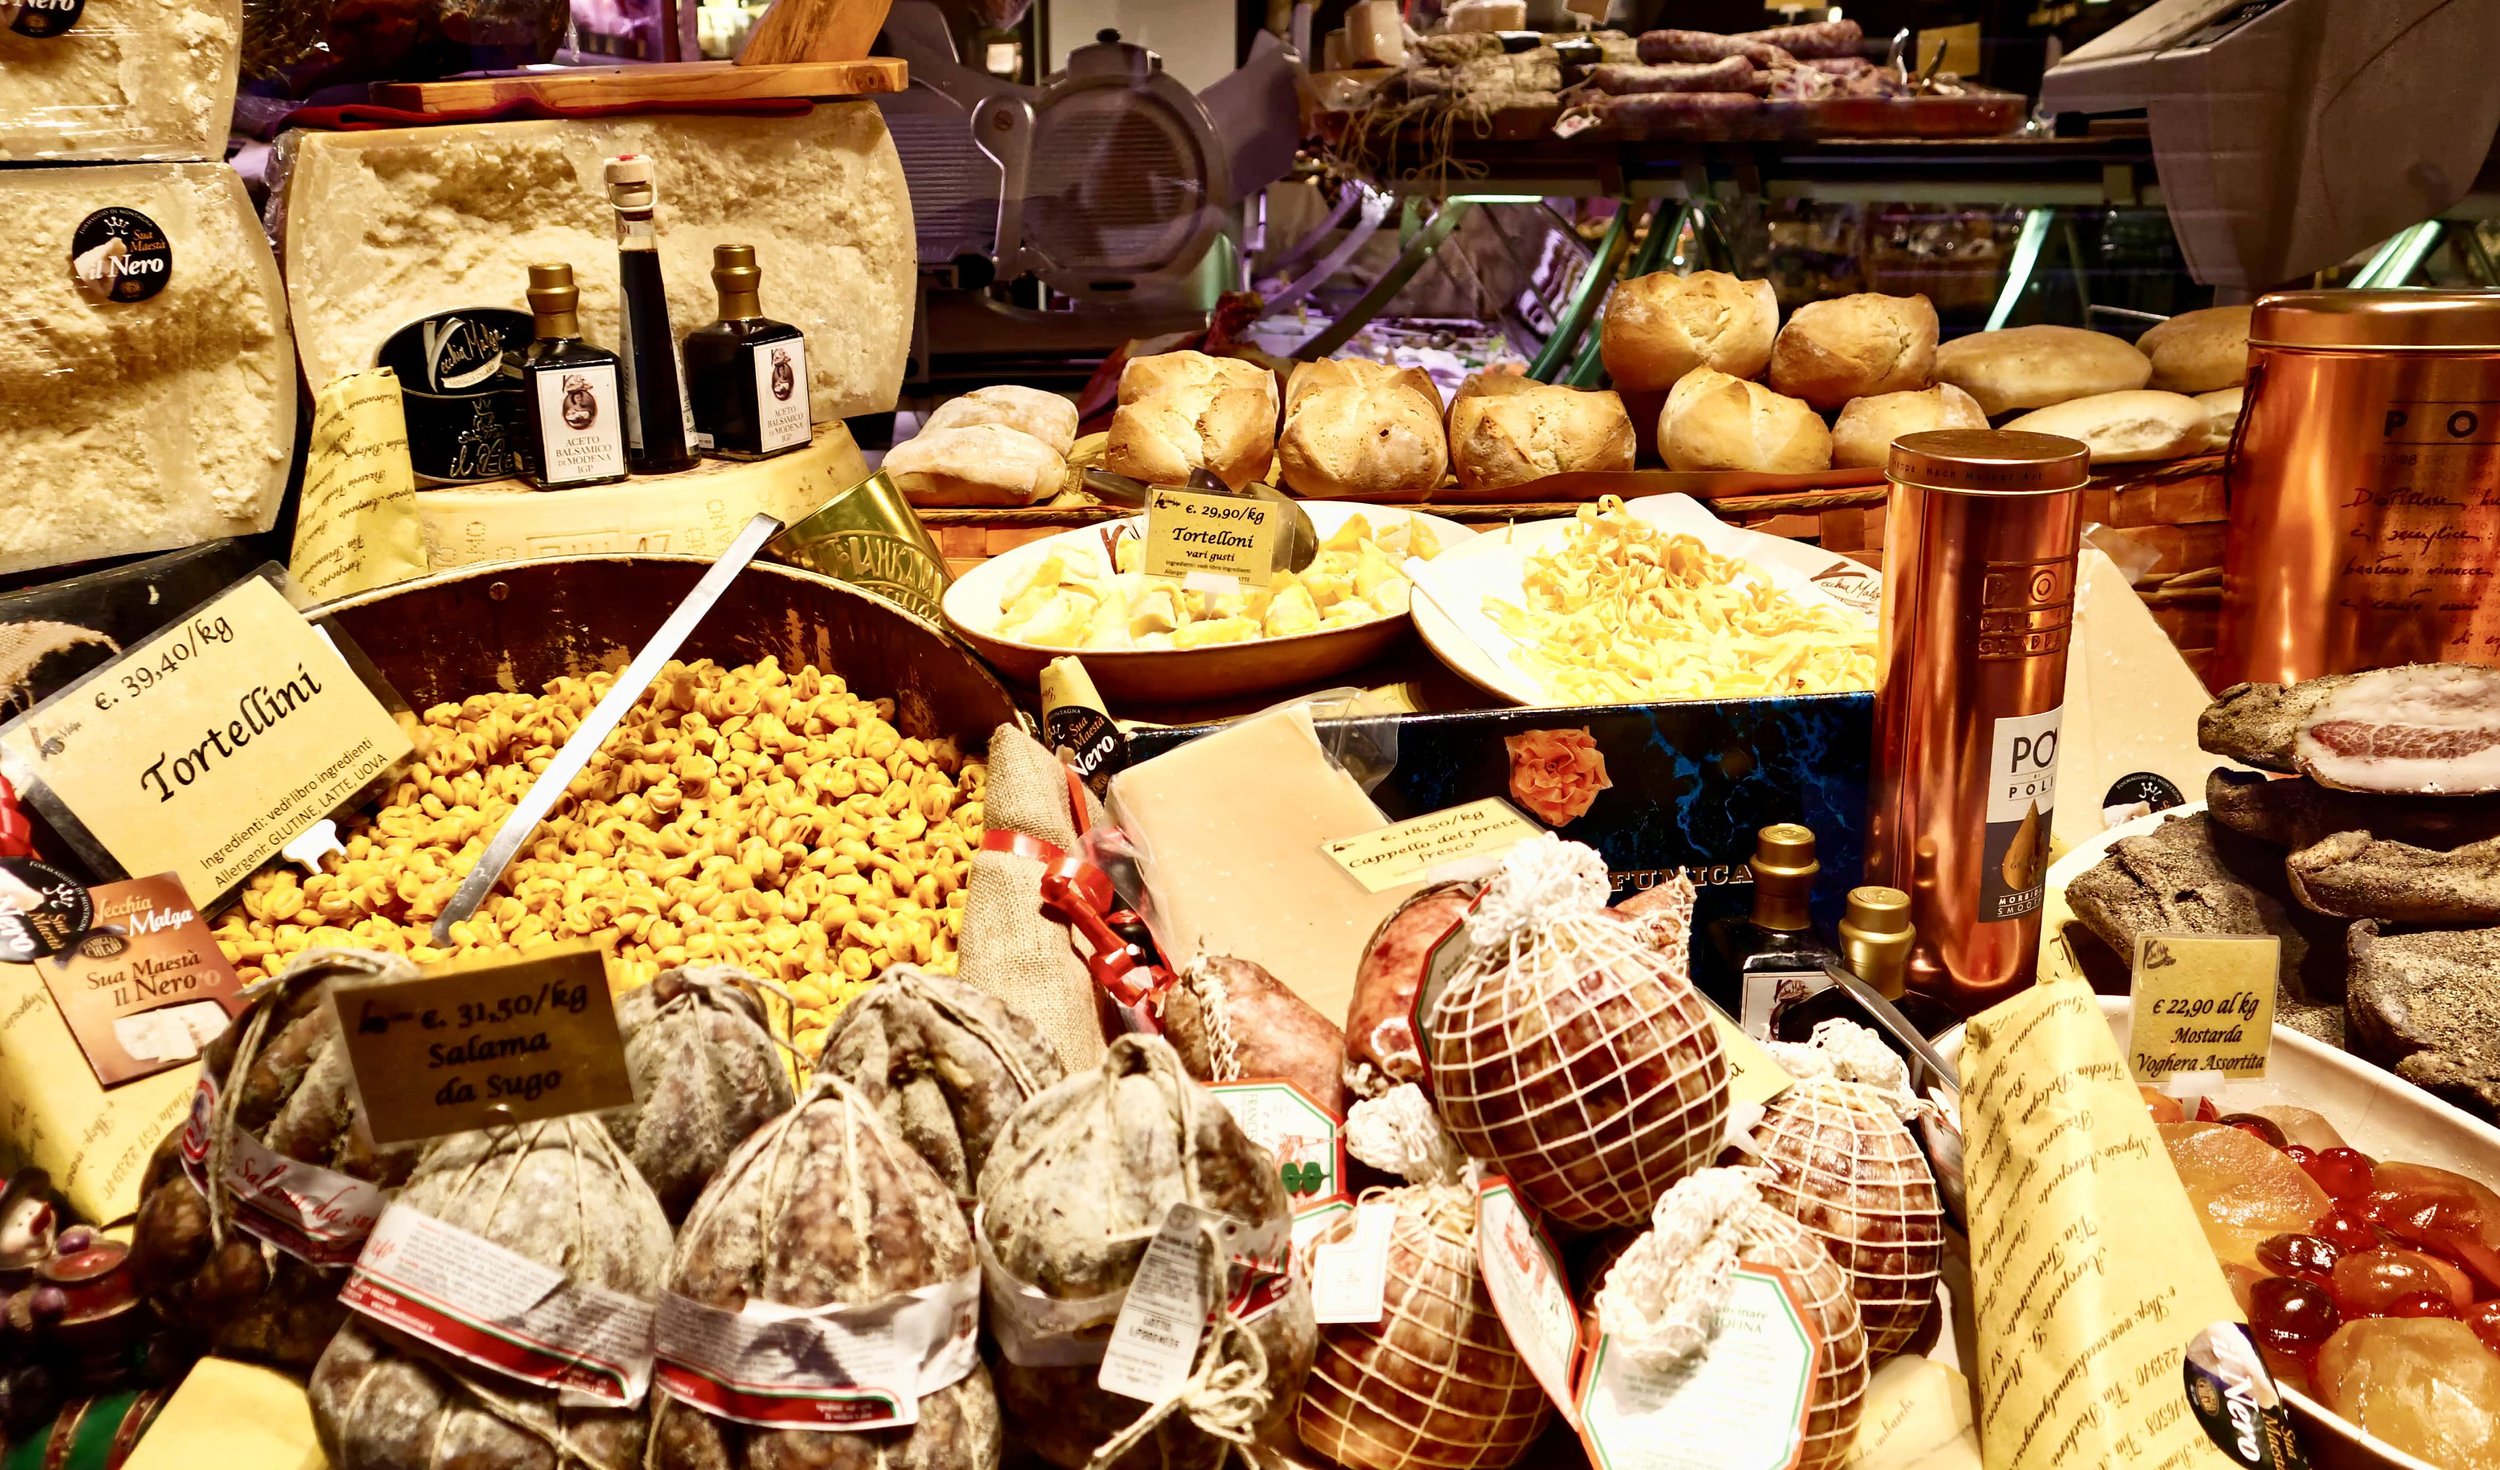 best food tours bologna